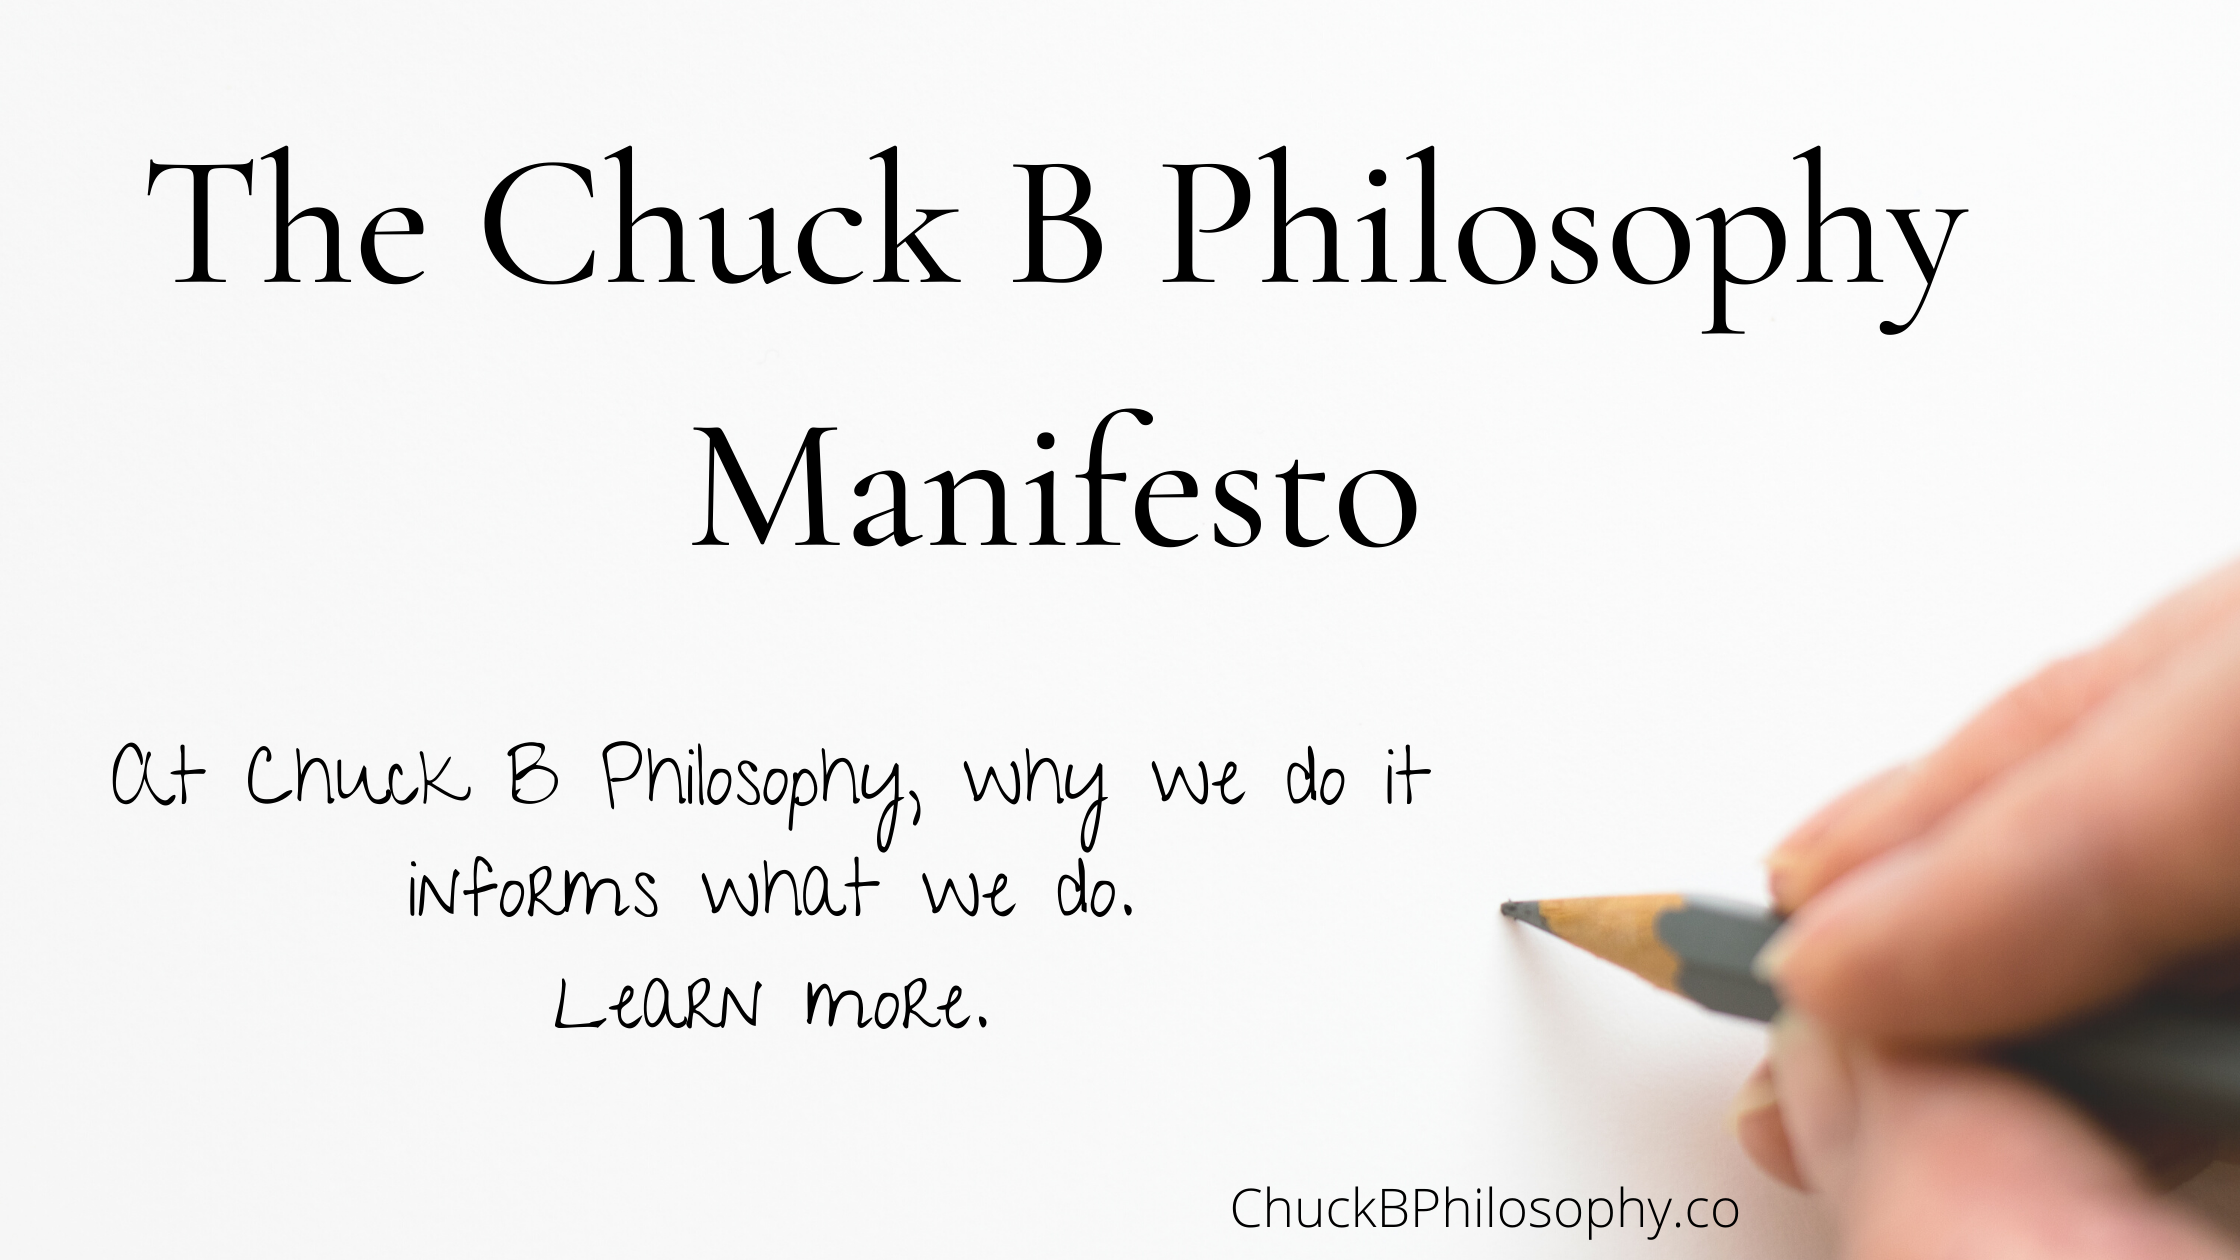 The Chuck B Philosophy Manifesto